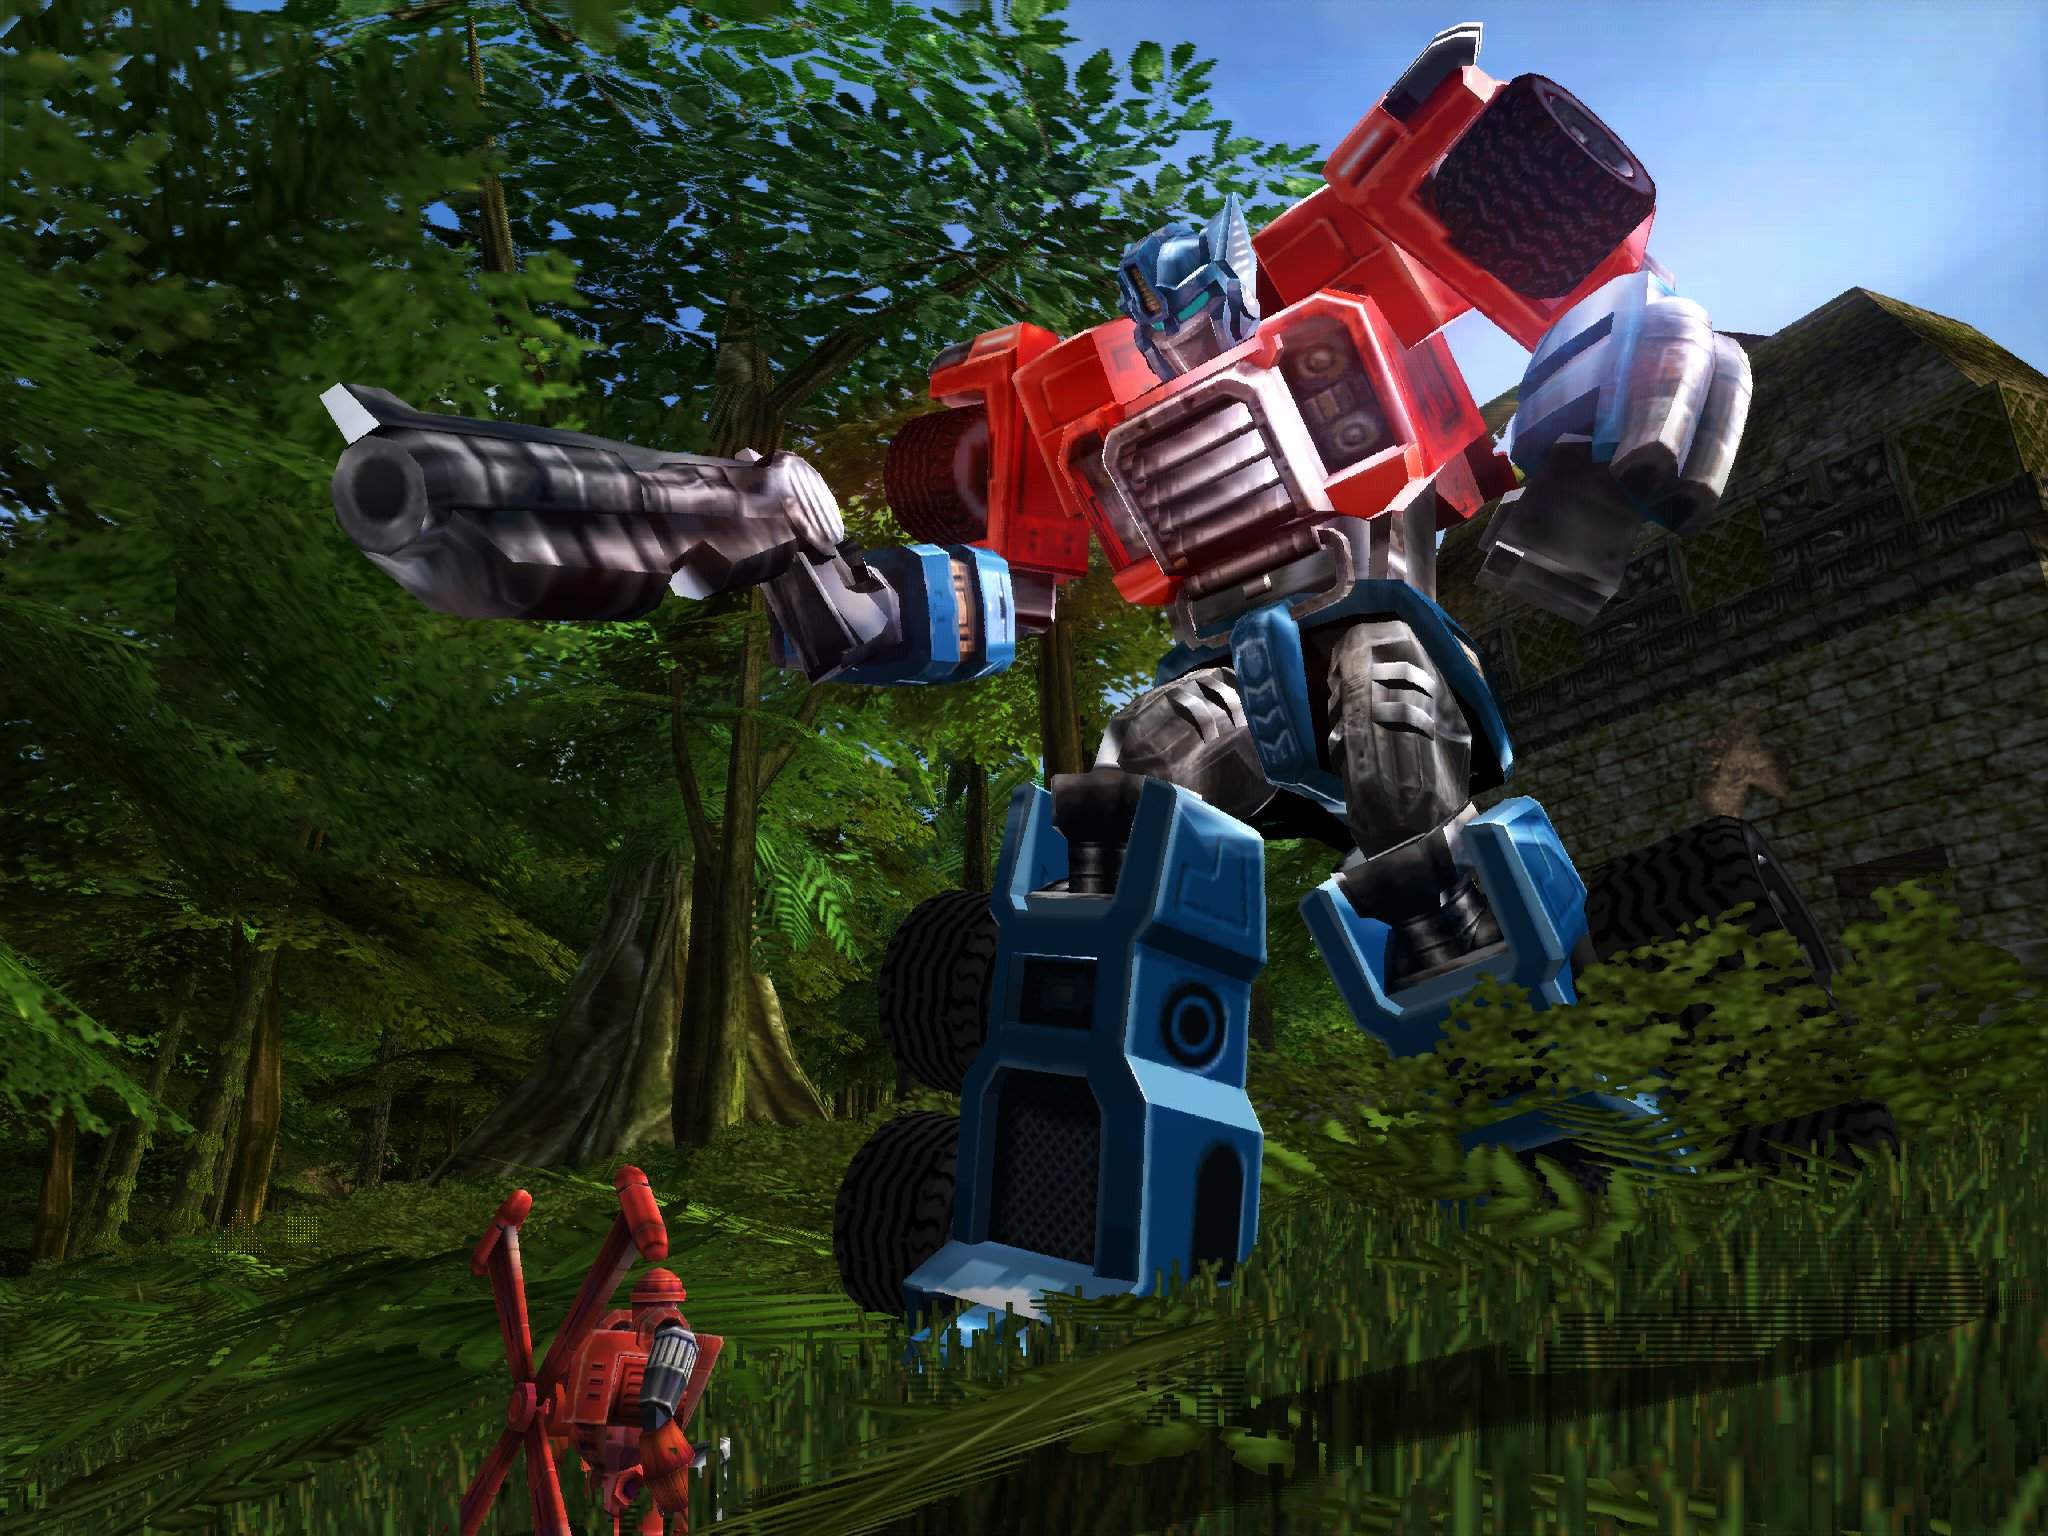 Imágenes de Transformers Armada: Prelude to Energon.